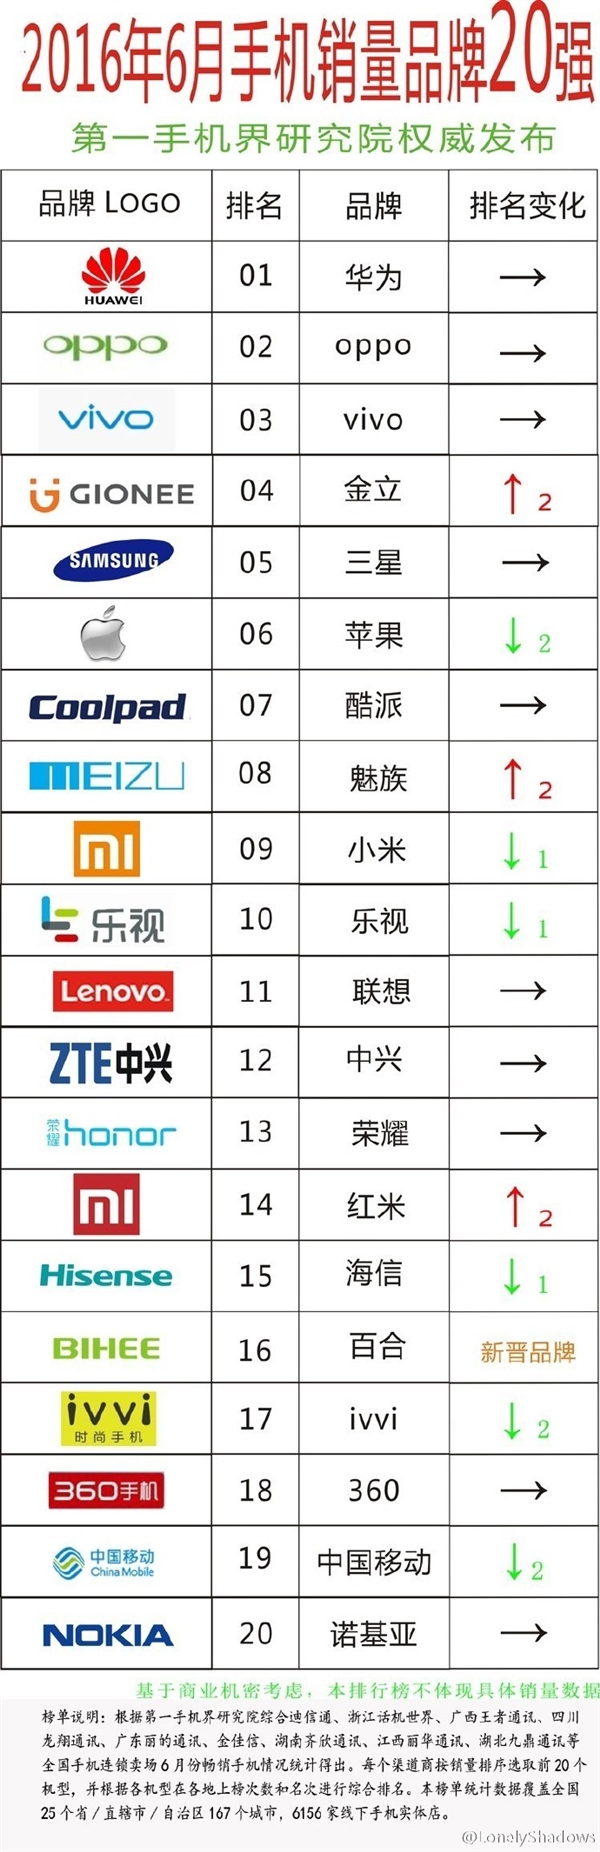 هواوی پر فروش ترین کمپانی تلفن همراه در چین